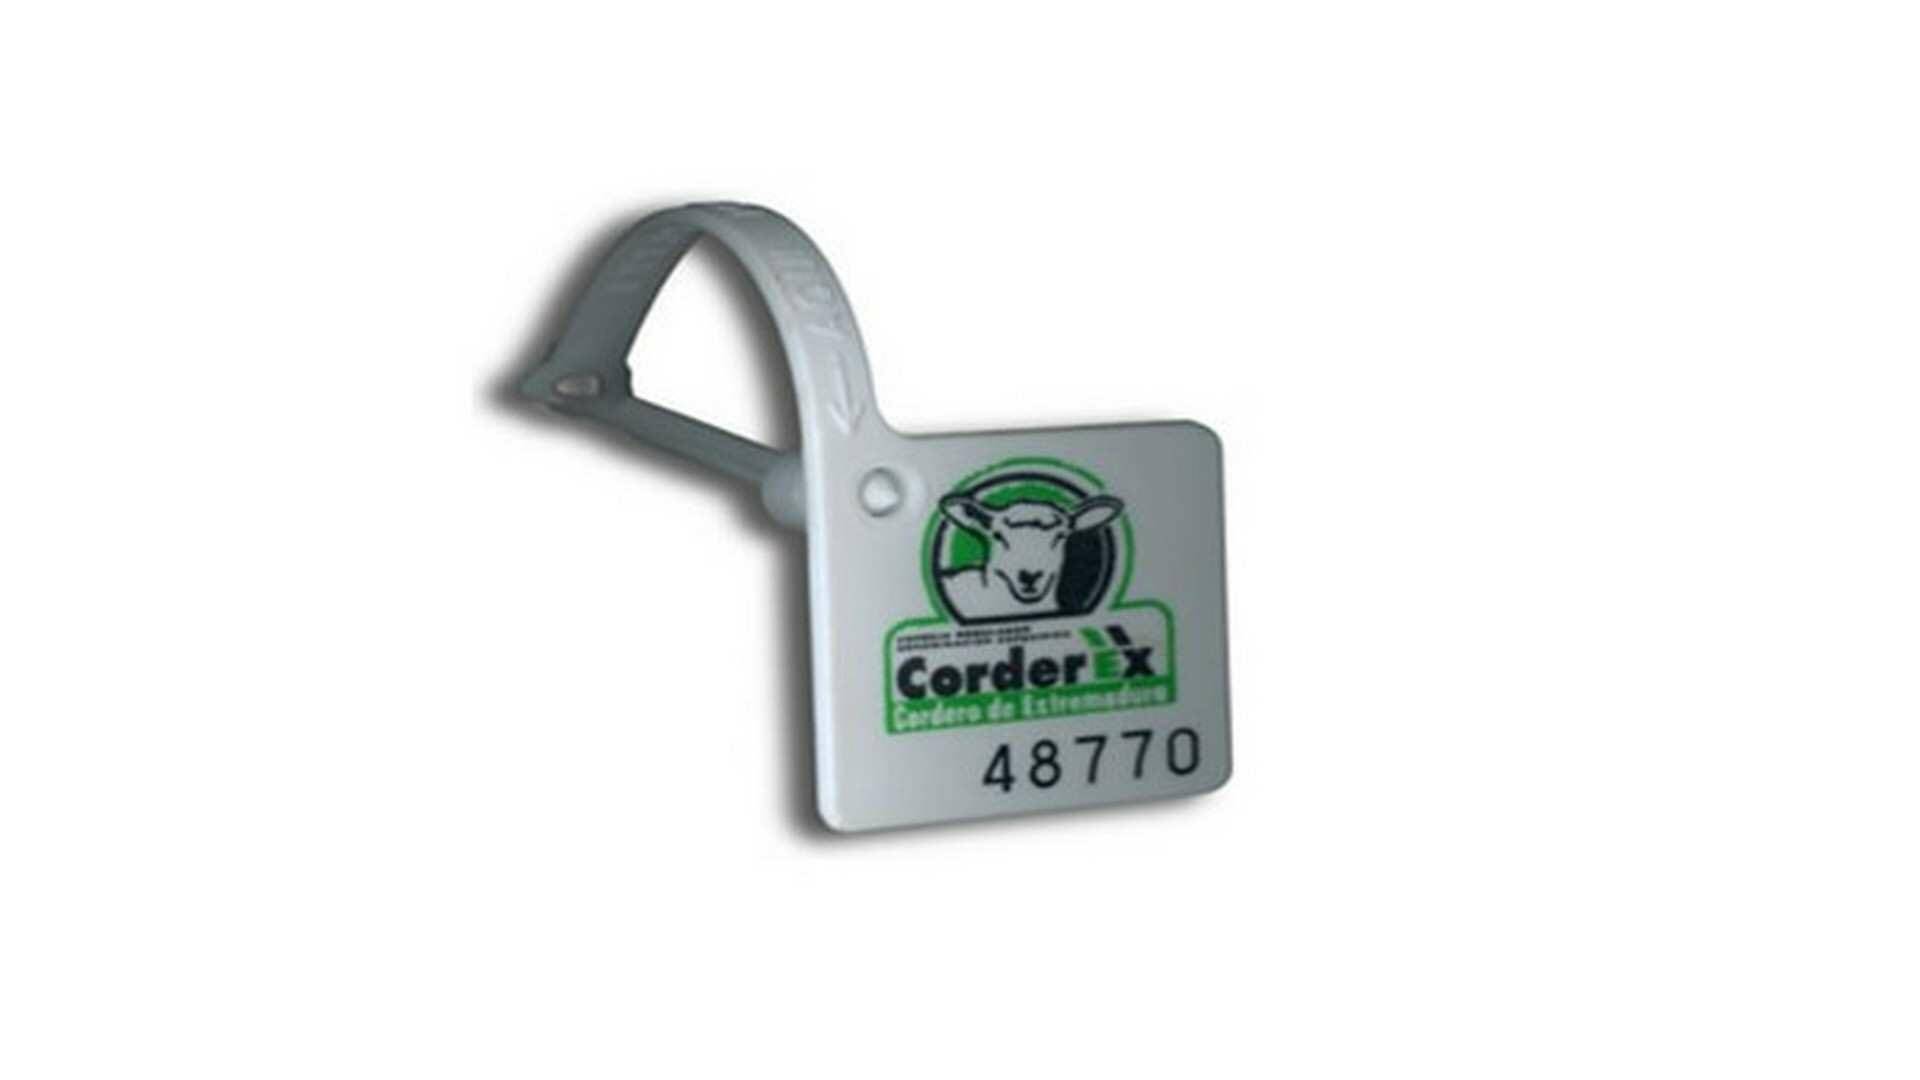 Identificación numerada que certifica un cordero de la I.G.P. Corderex